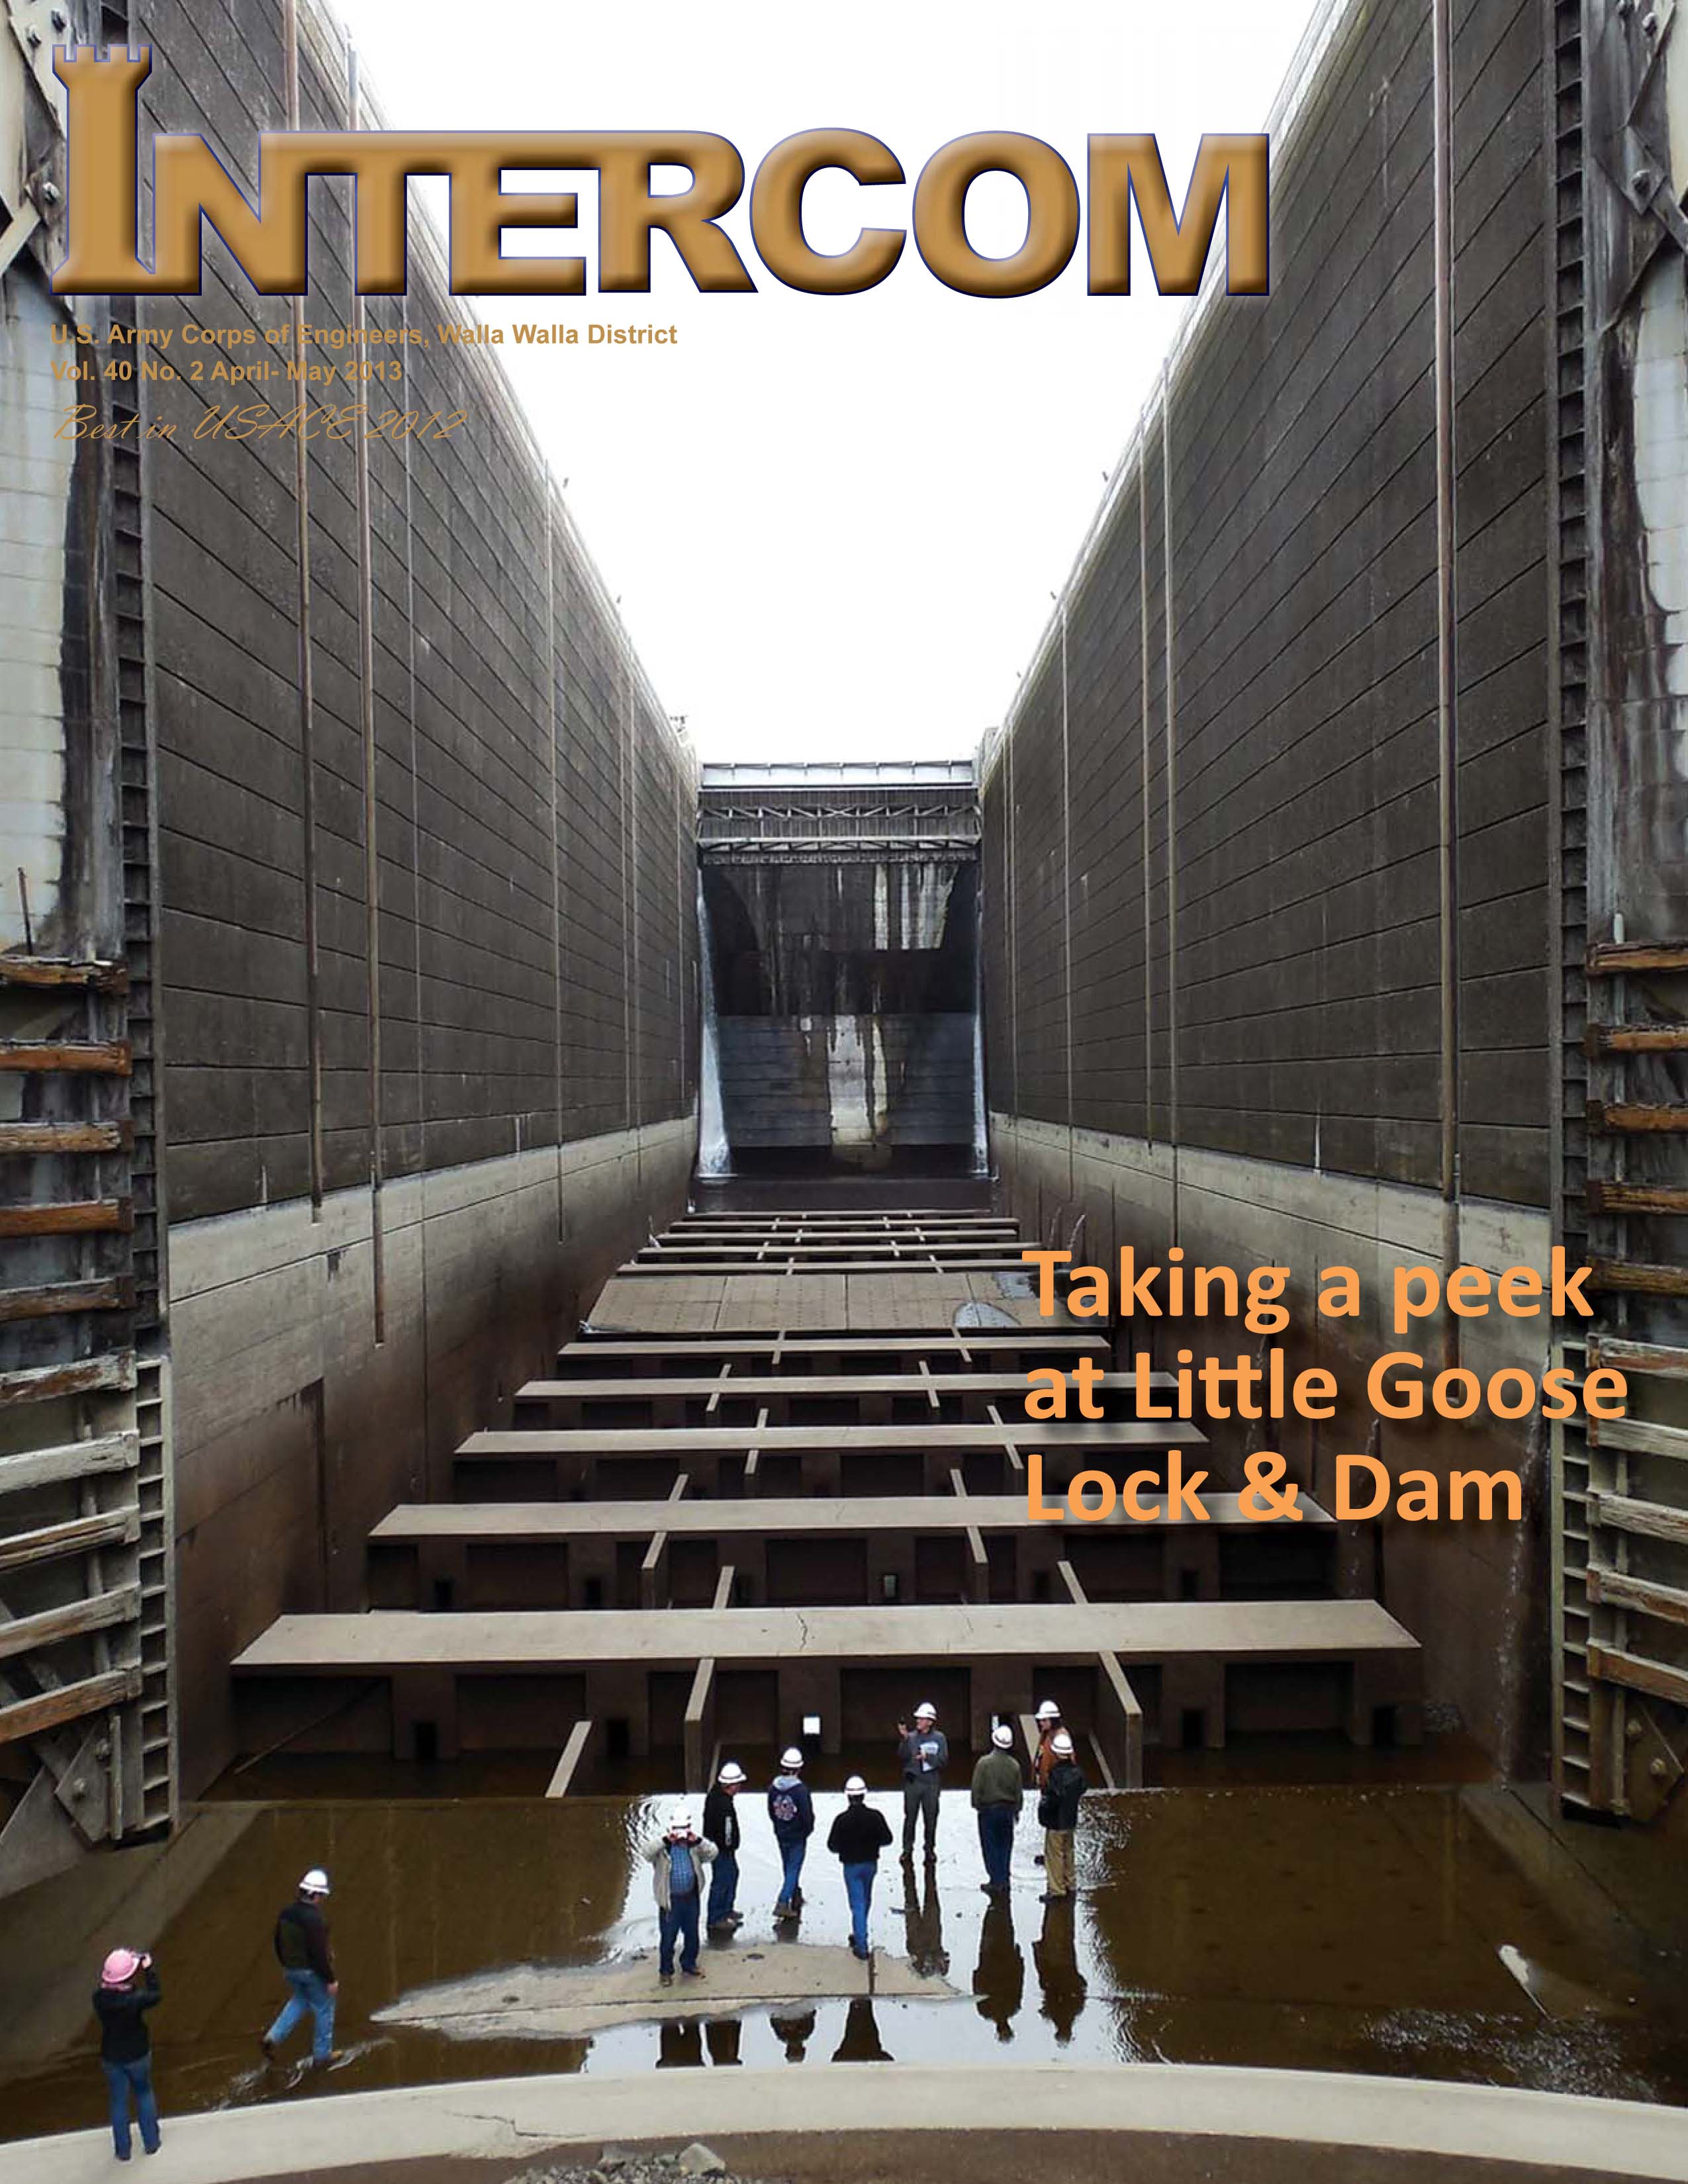 Intercom April-May 2013